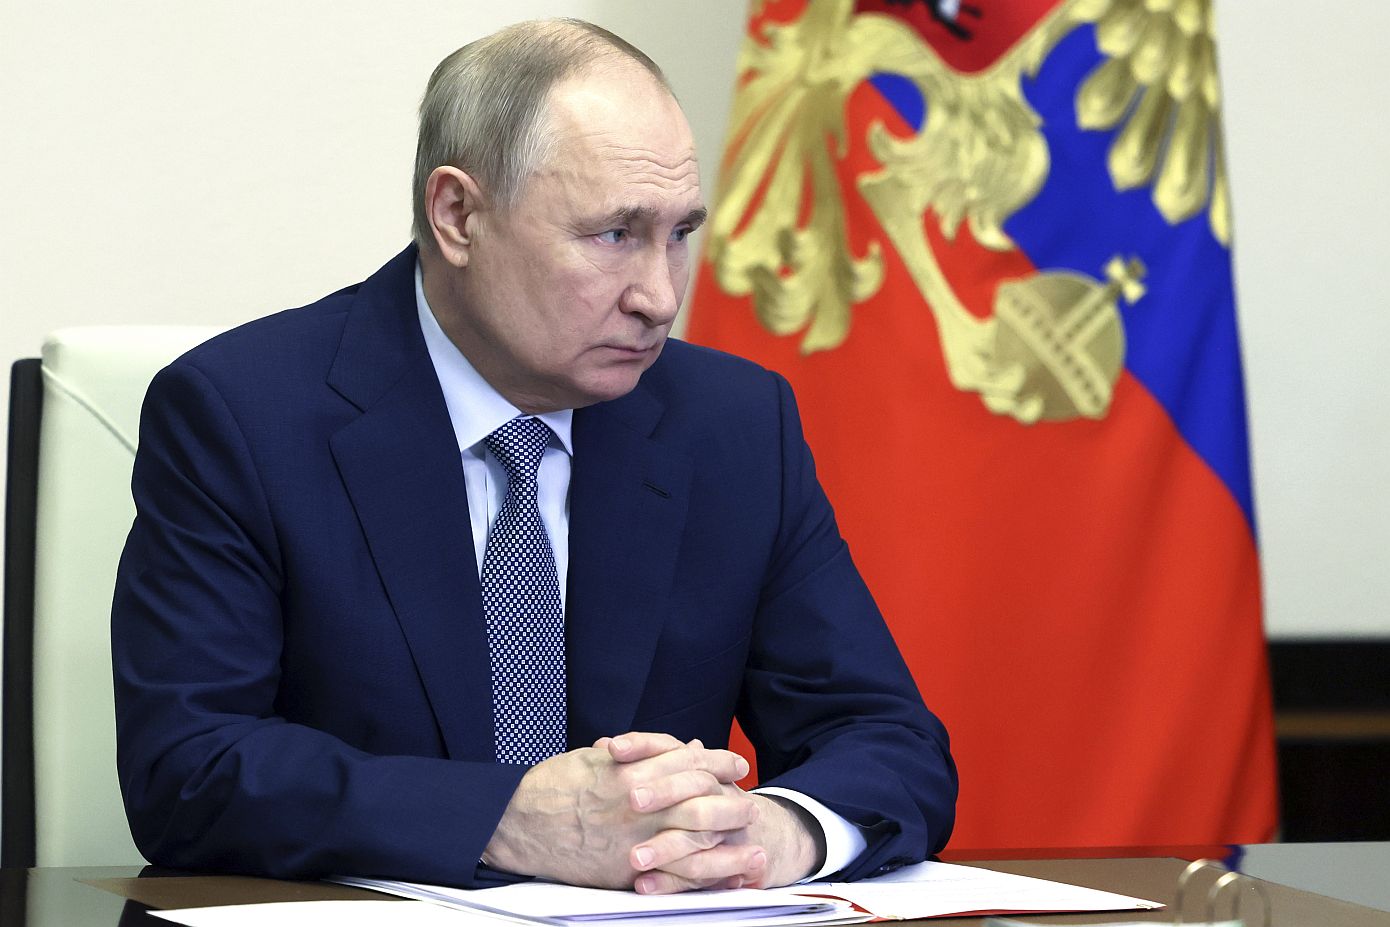 Ανάλυση του BBC για το μακελειό στη Μόσχα – Αναμένει «ακραία βία» αντίδραση από τον Βλαντίμιρ Πούτιν